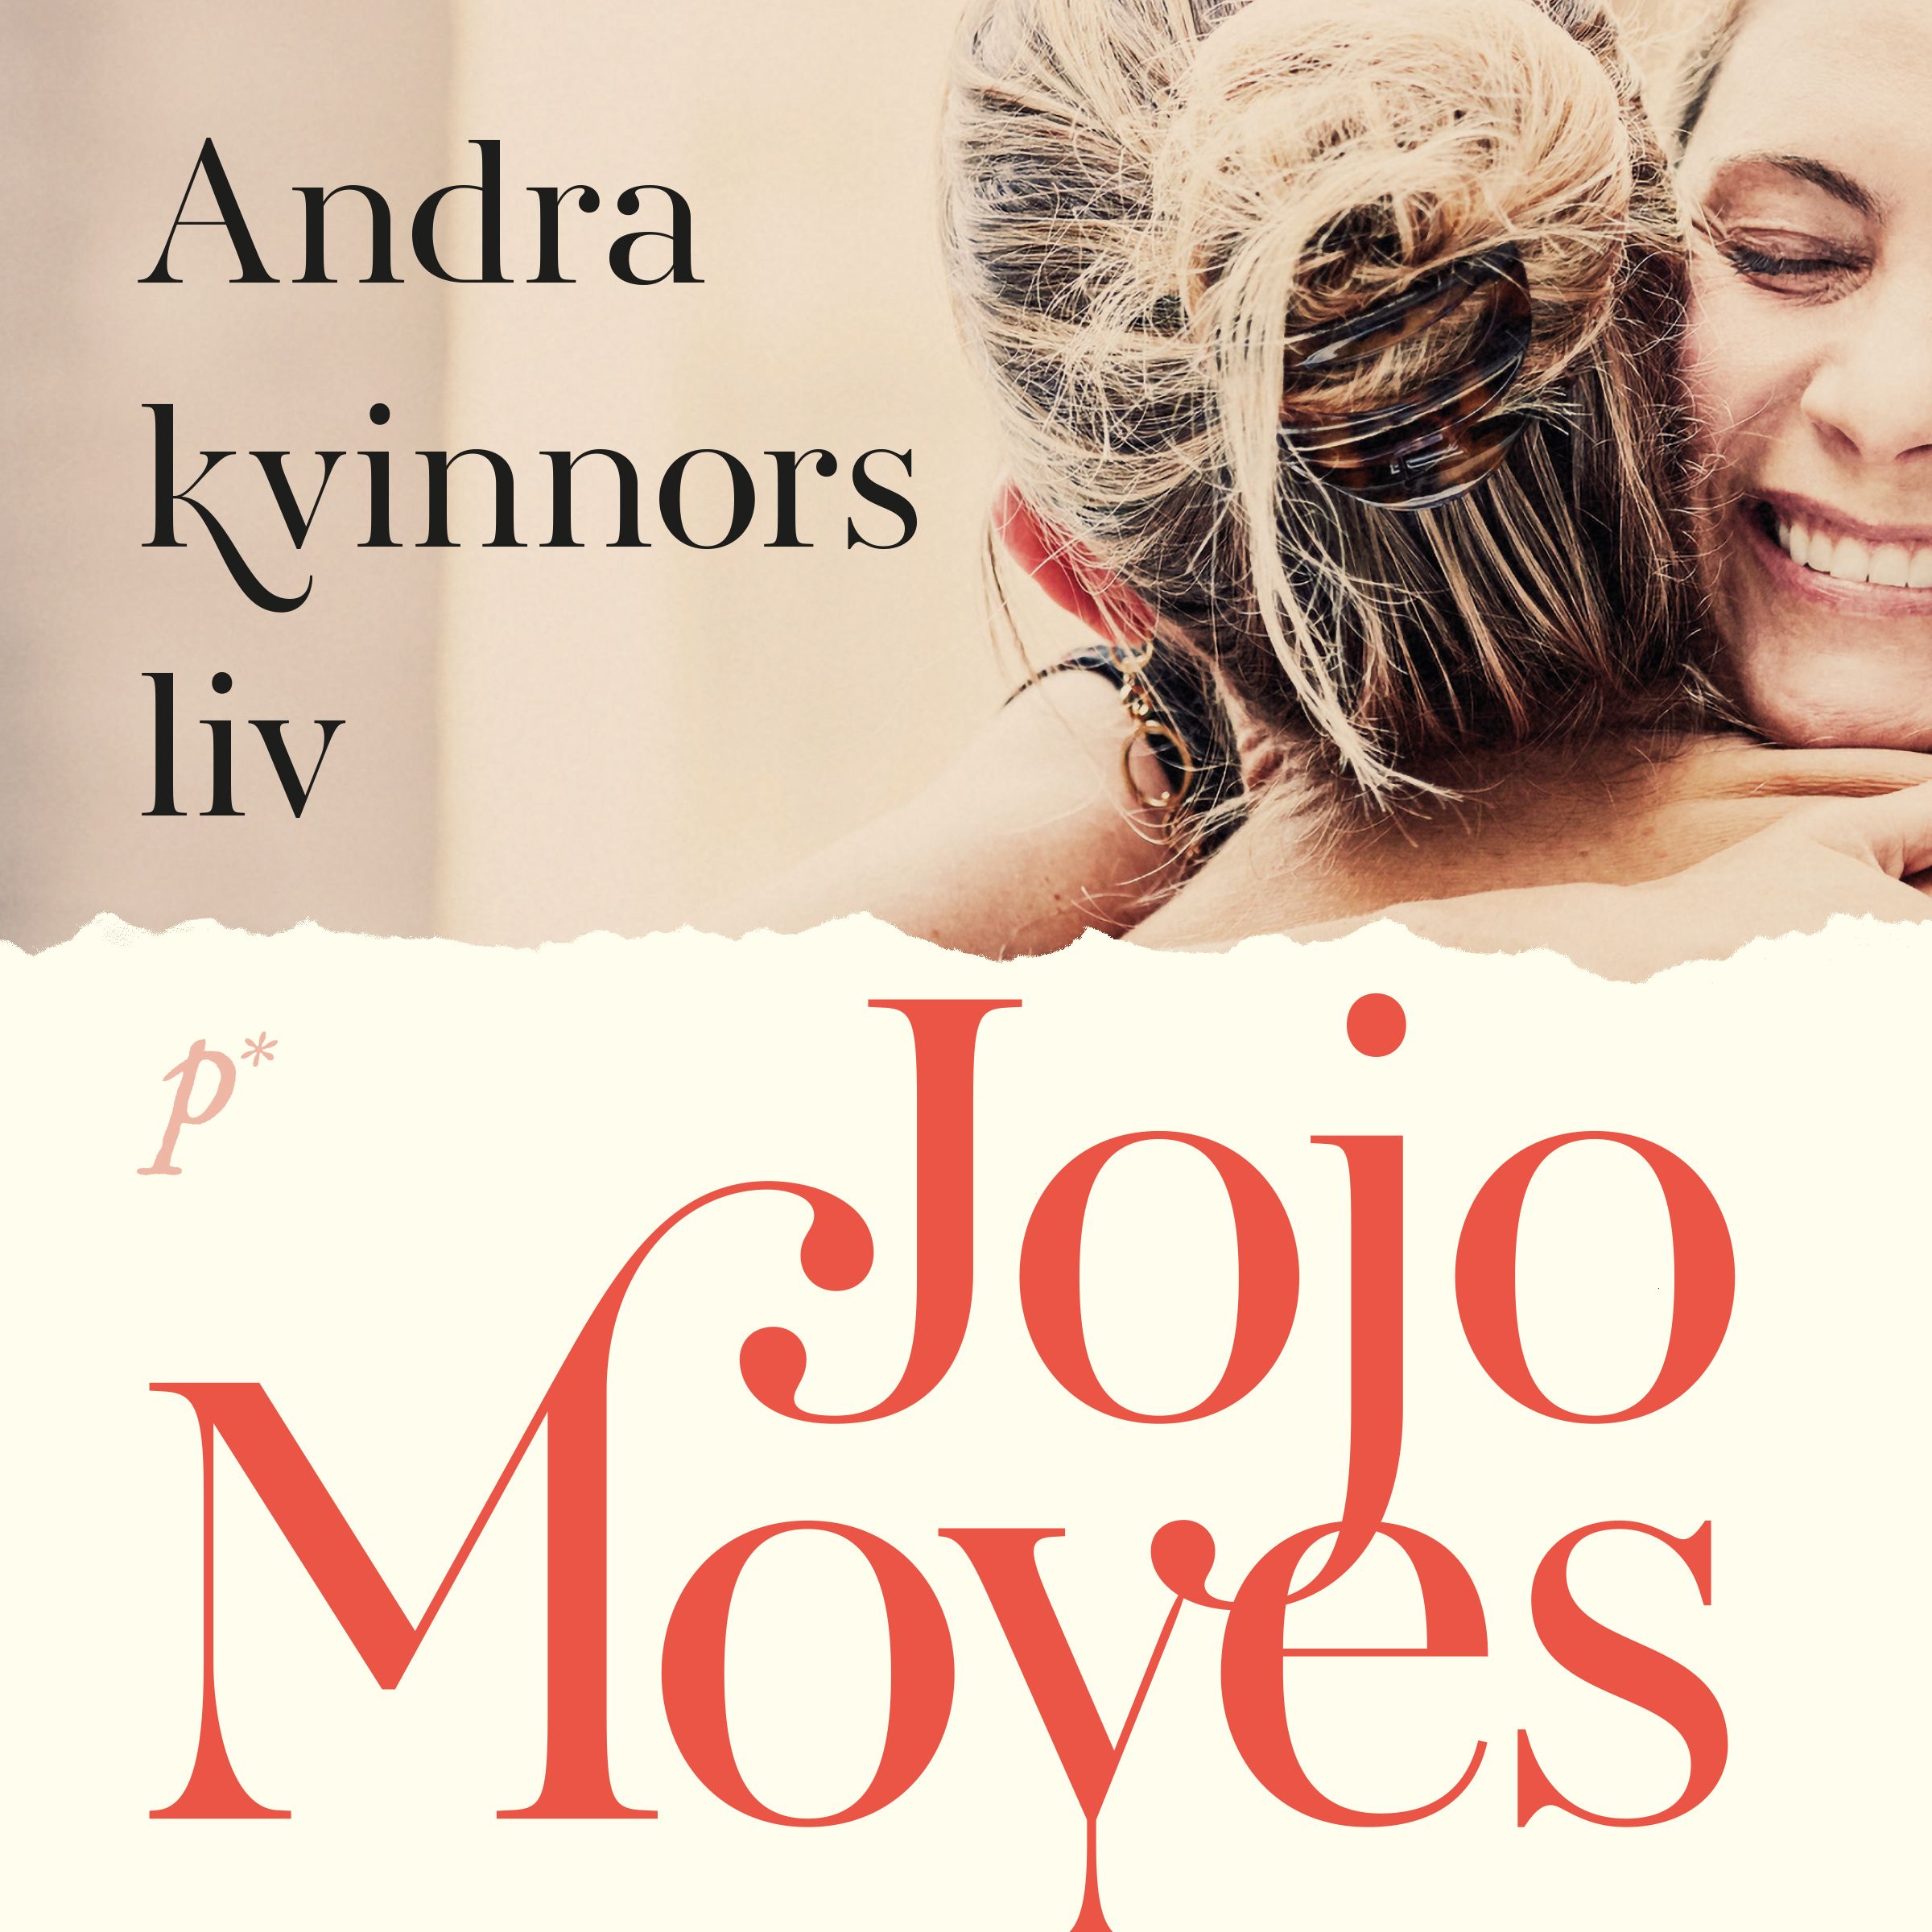 Andra kvinnors liv, ljudbok av Jojo Moyes